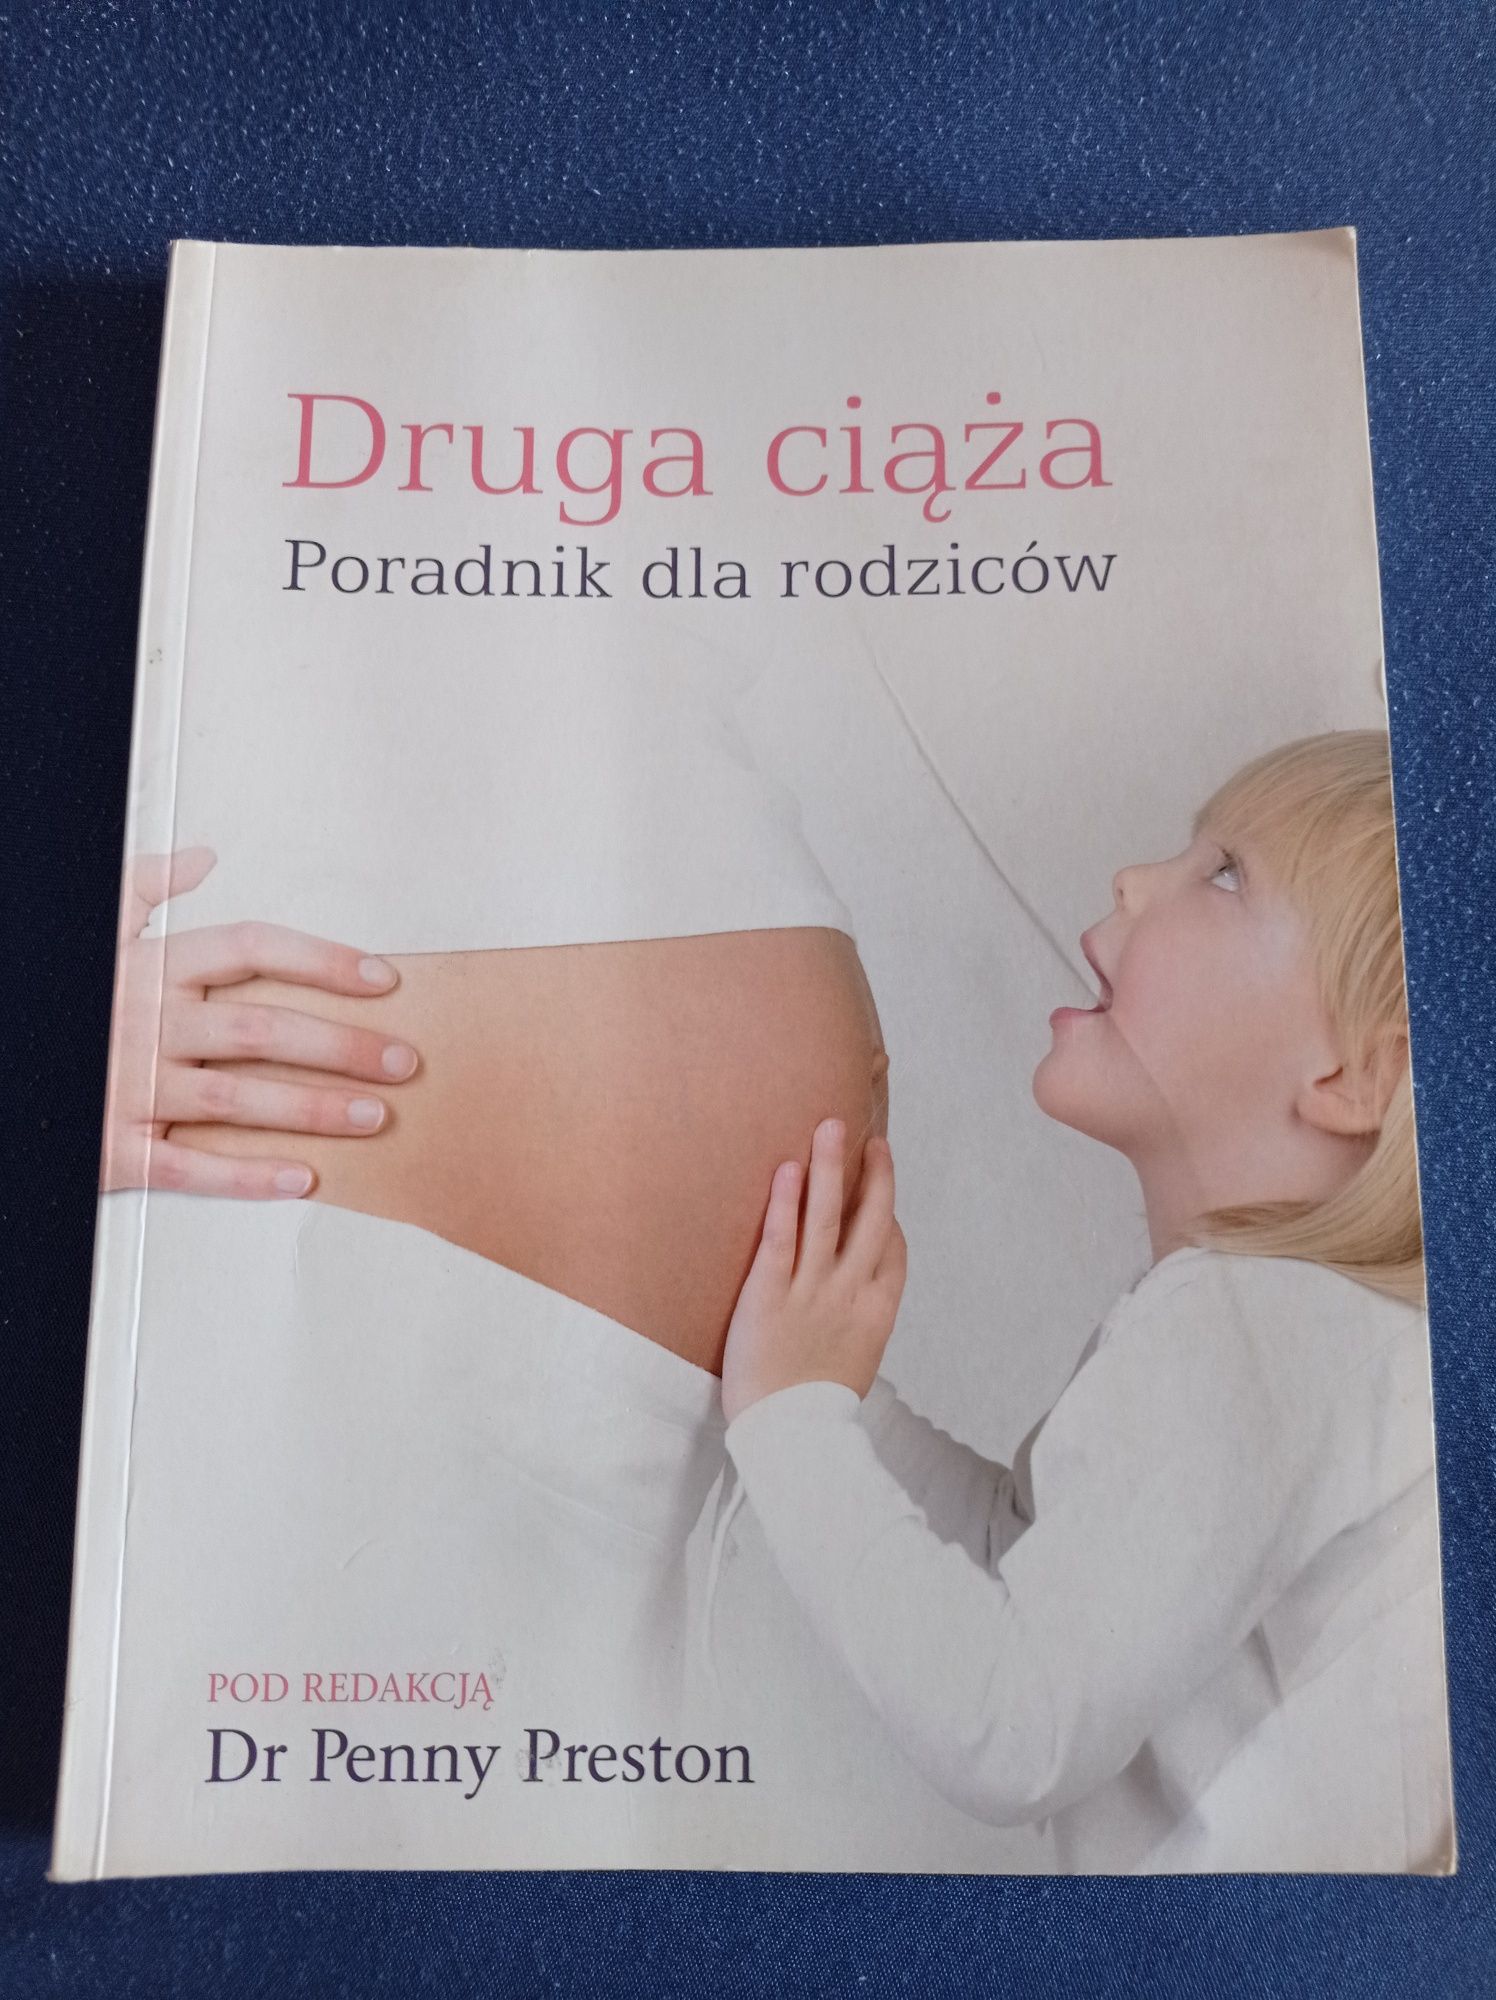 Druga ciąża, poradnik dla rodziców książka Dr Penny Preston